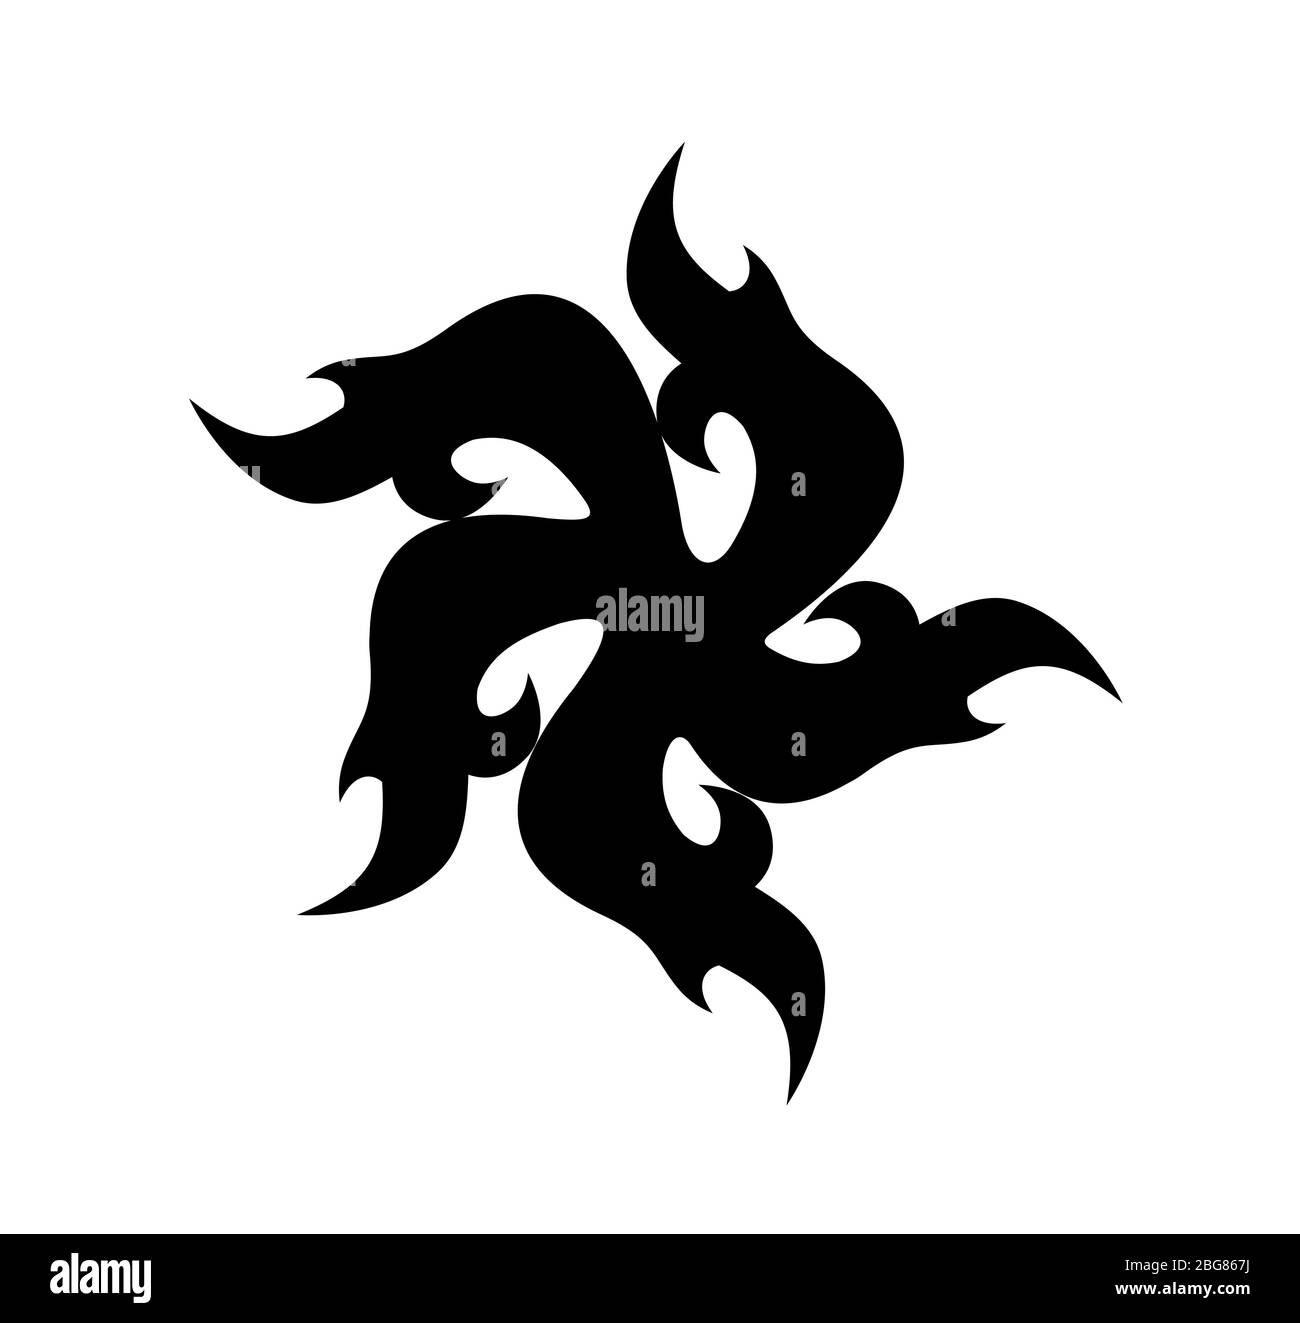 Simbolo di turbolenza del tatuaggio colore nero isolato su bianco. Forma vettoriale delle fiamme con cinque vertici - modello con logo di ornamento Folk Pagan Illustrazione Vettoriale